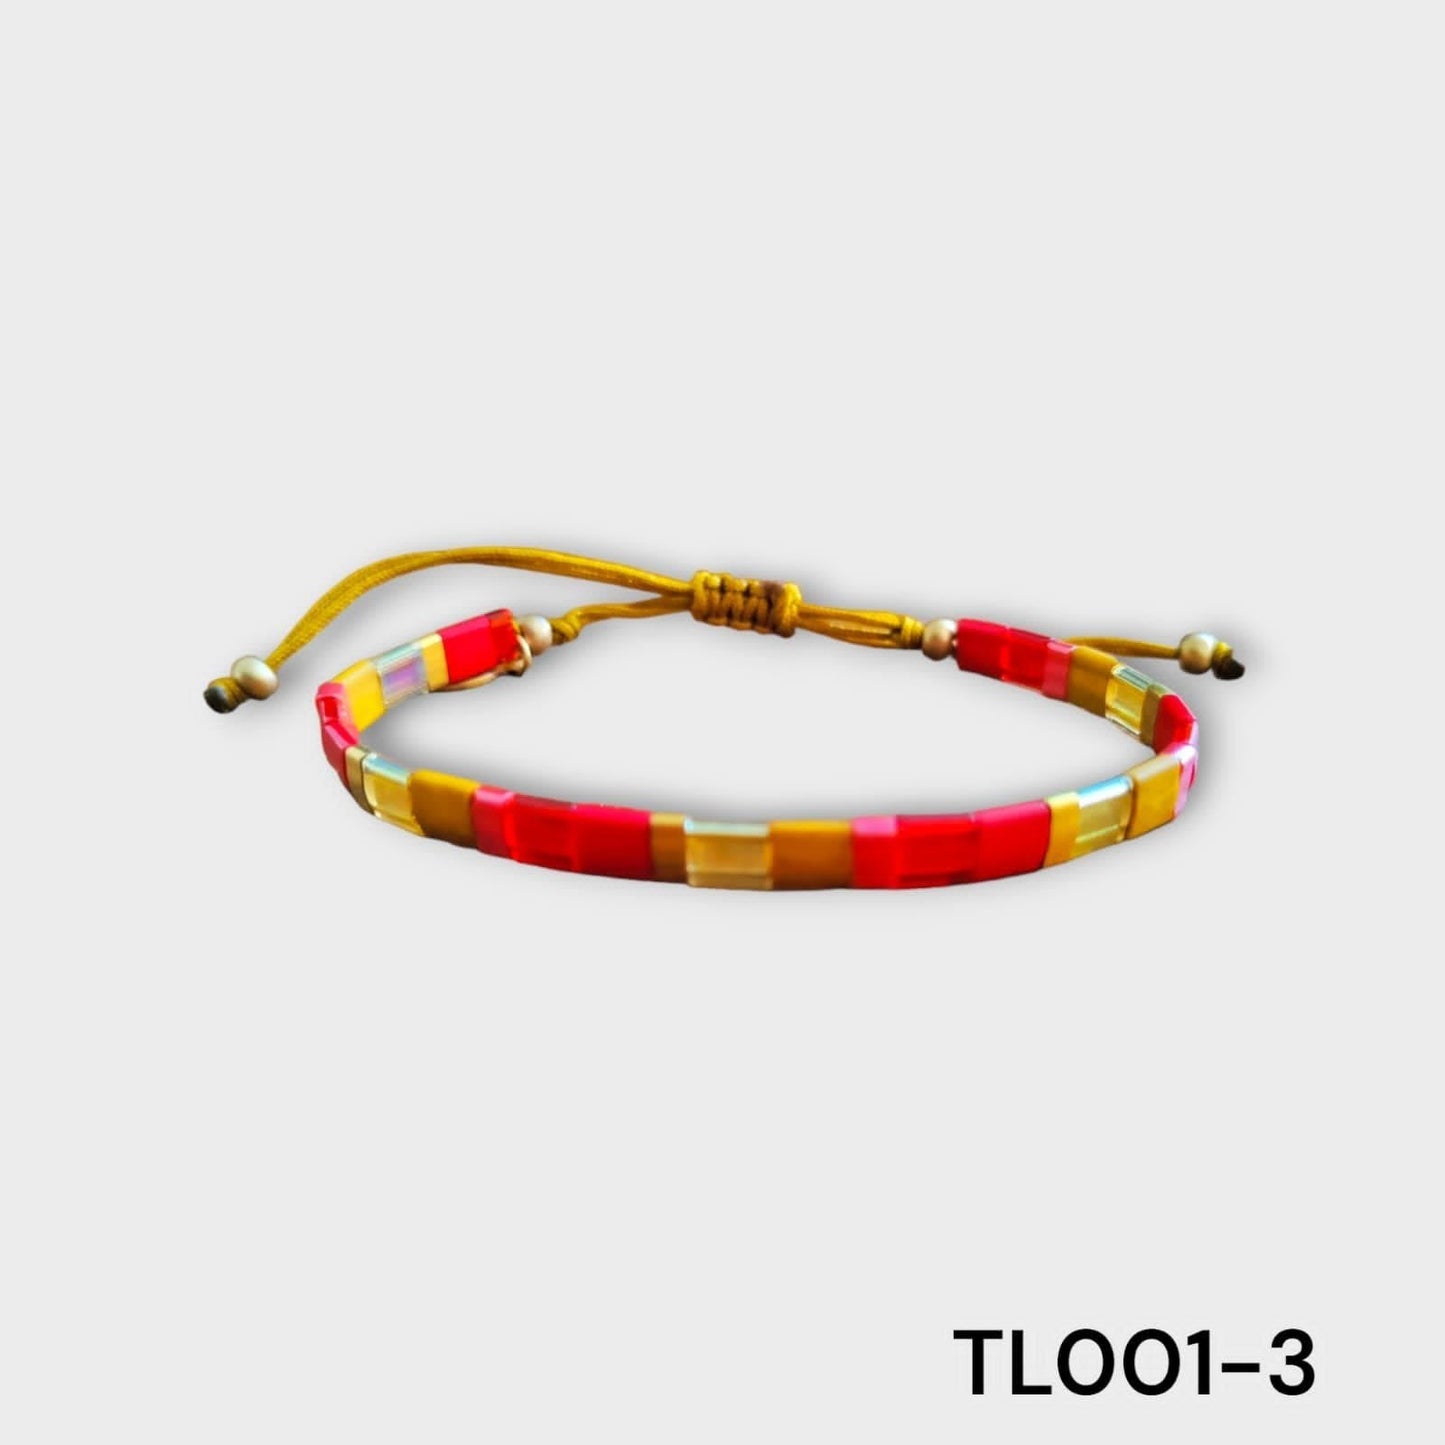 TL001